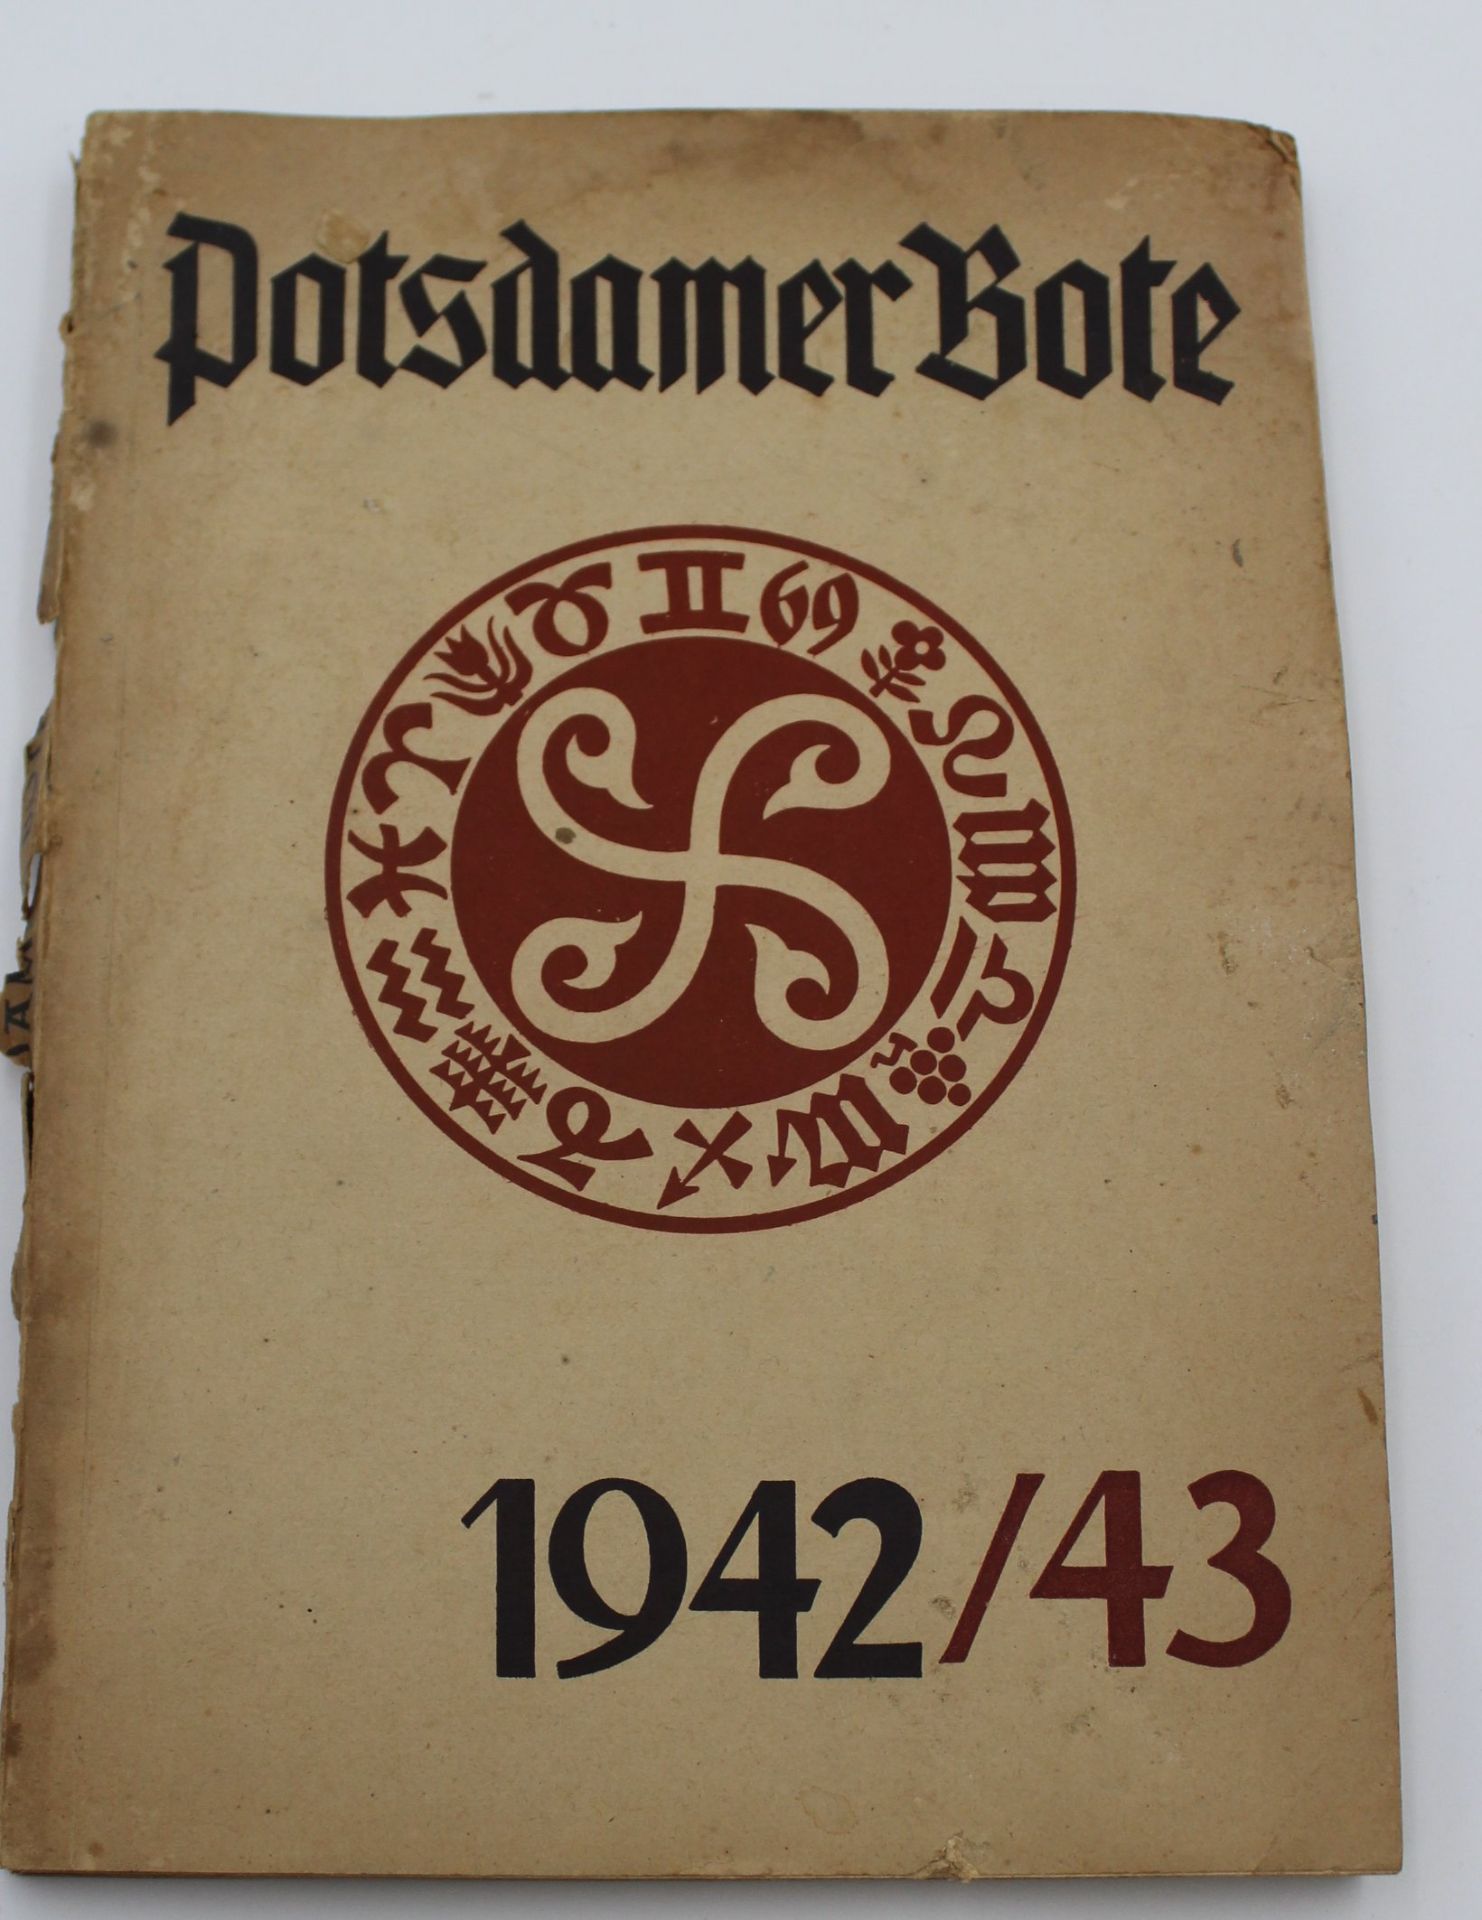 Potsdamer Bote  1942/43, Paperback, Gebrauchsspuren